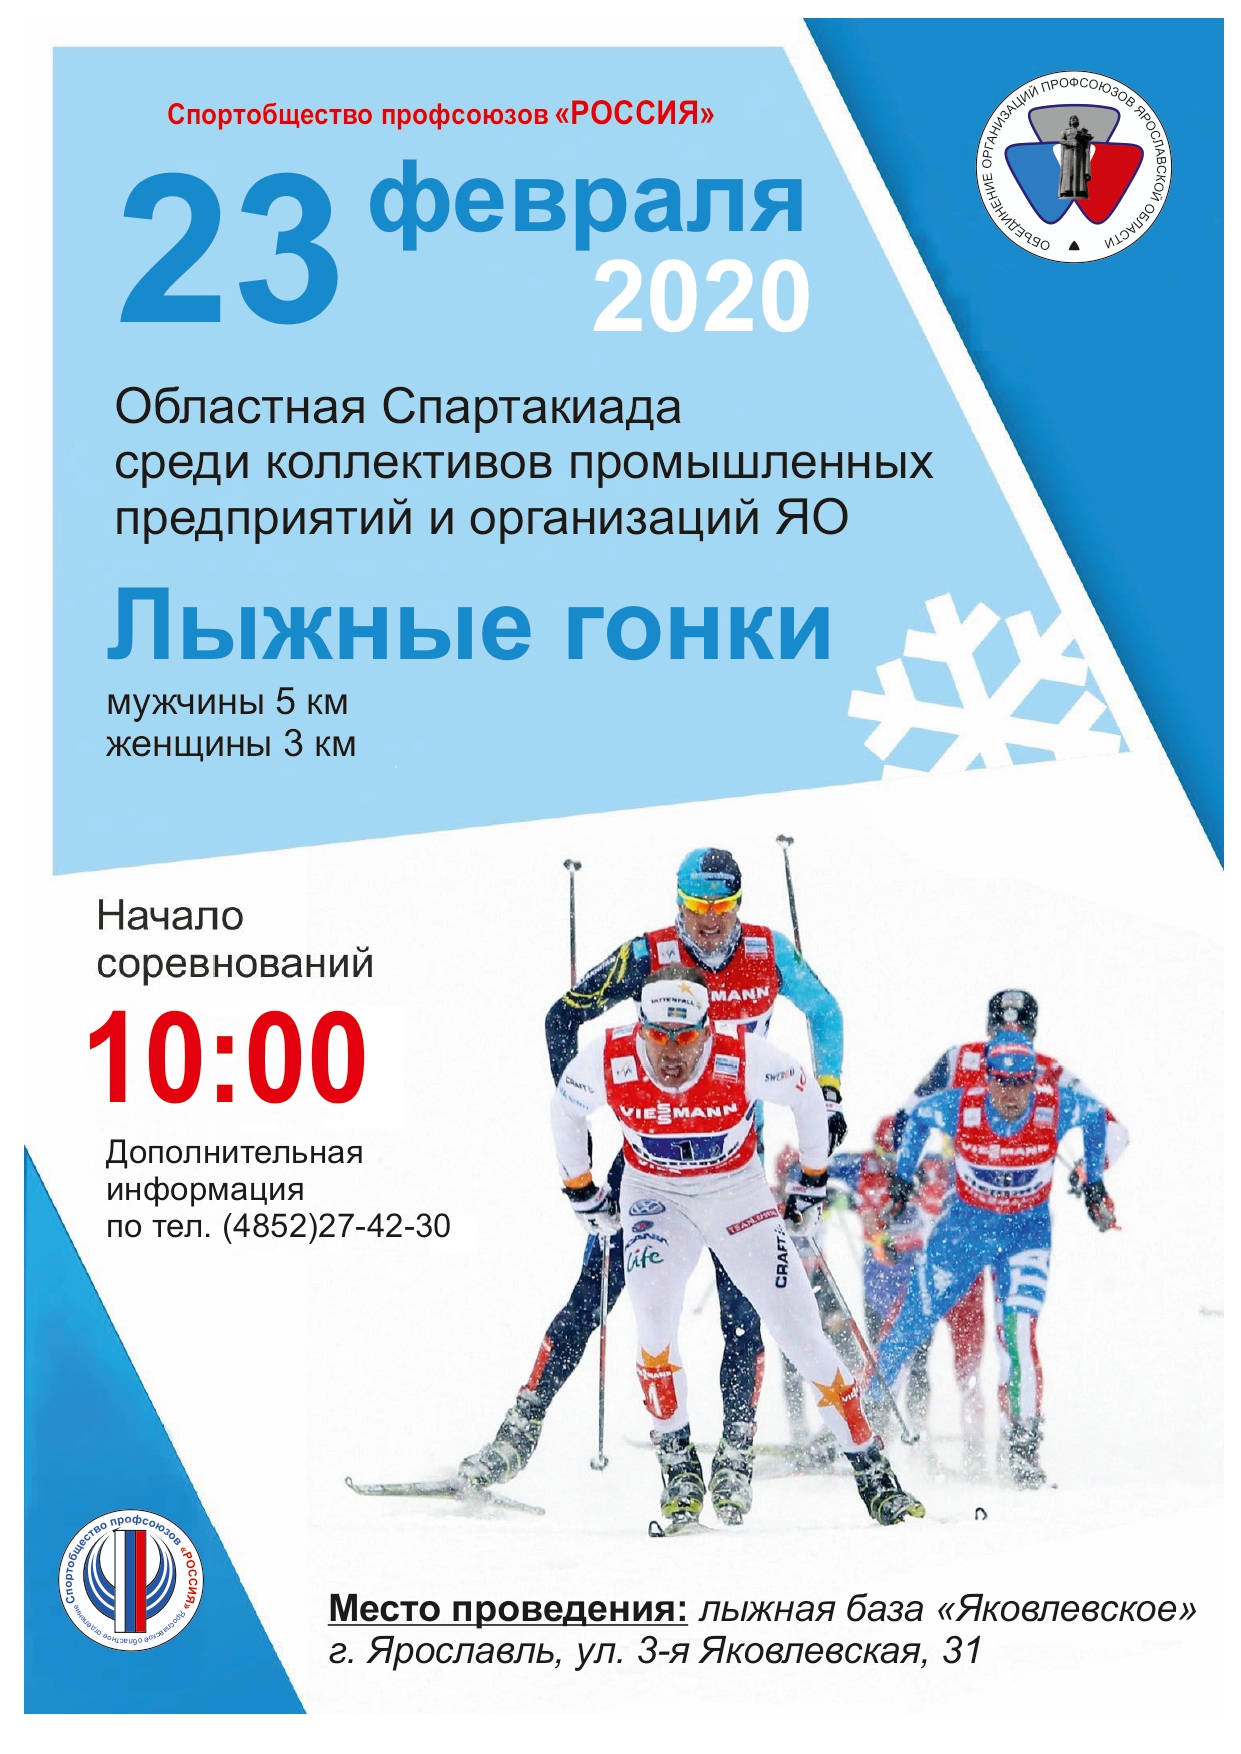 Соревнования по лыжным гонкам пройдут 23 февраля